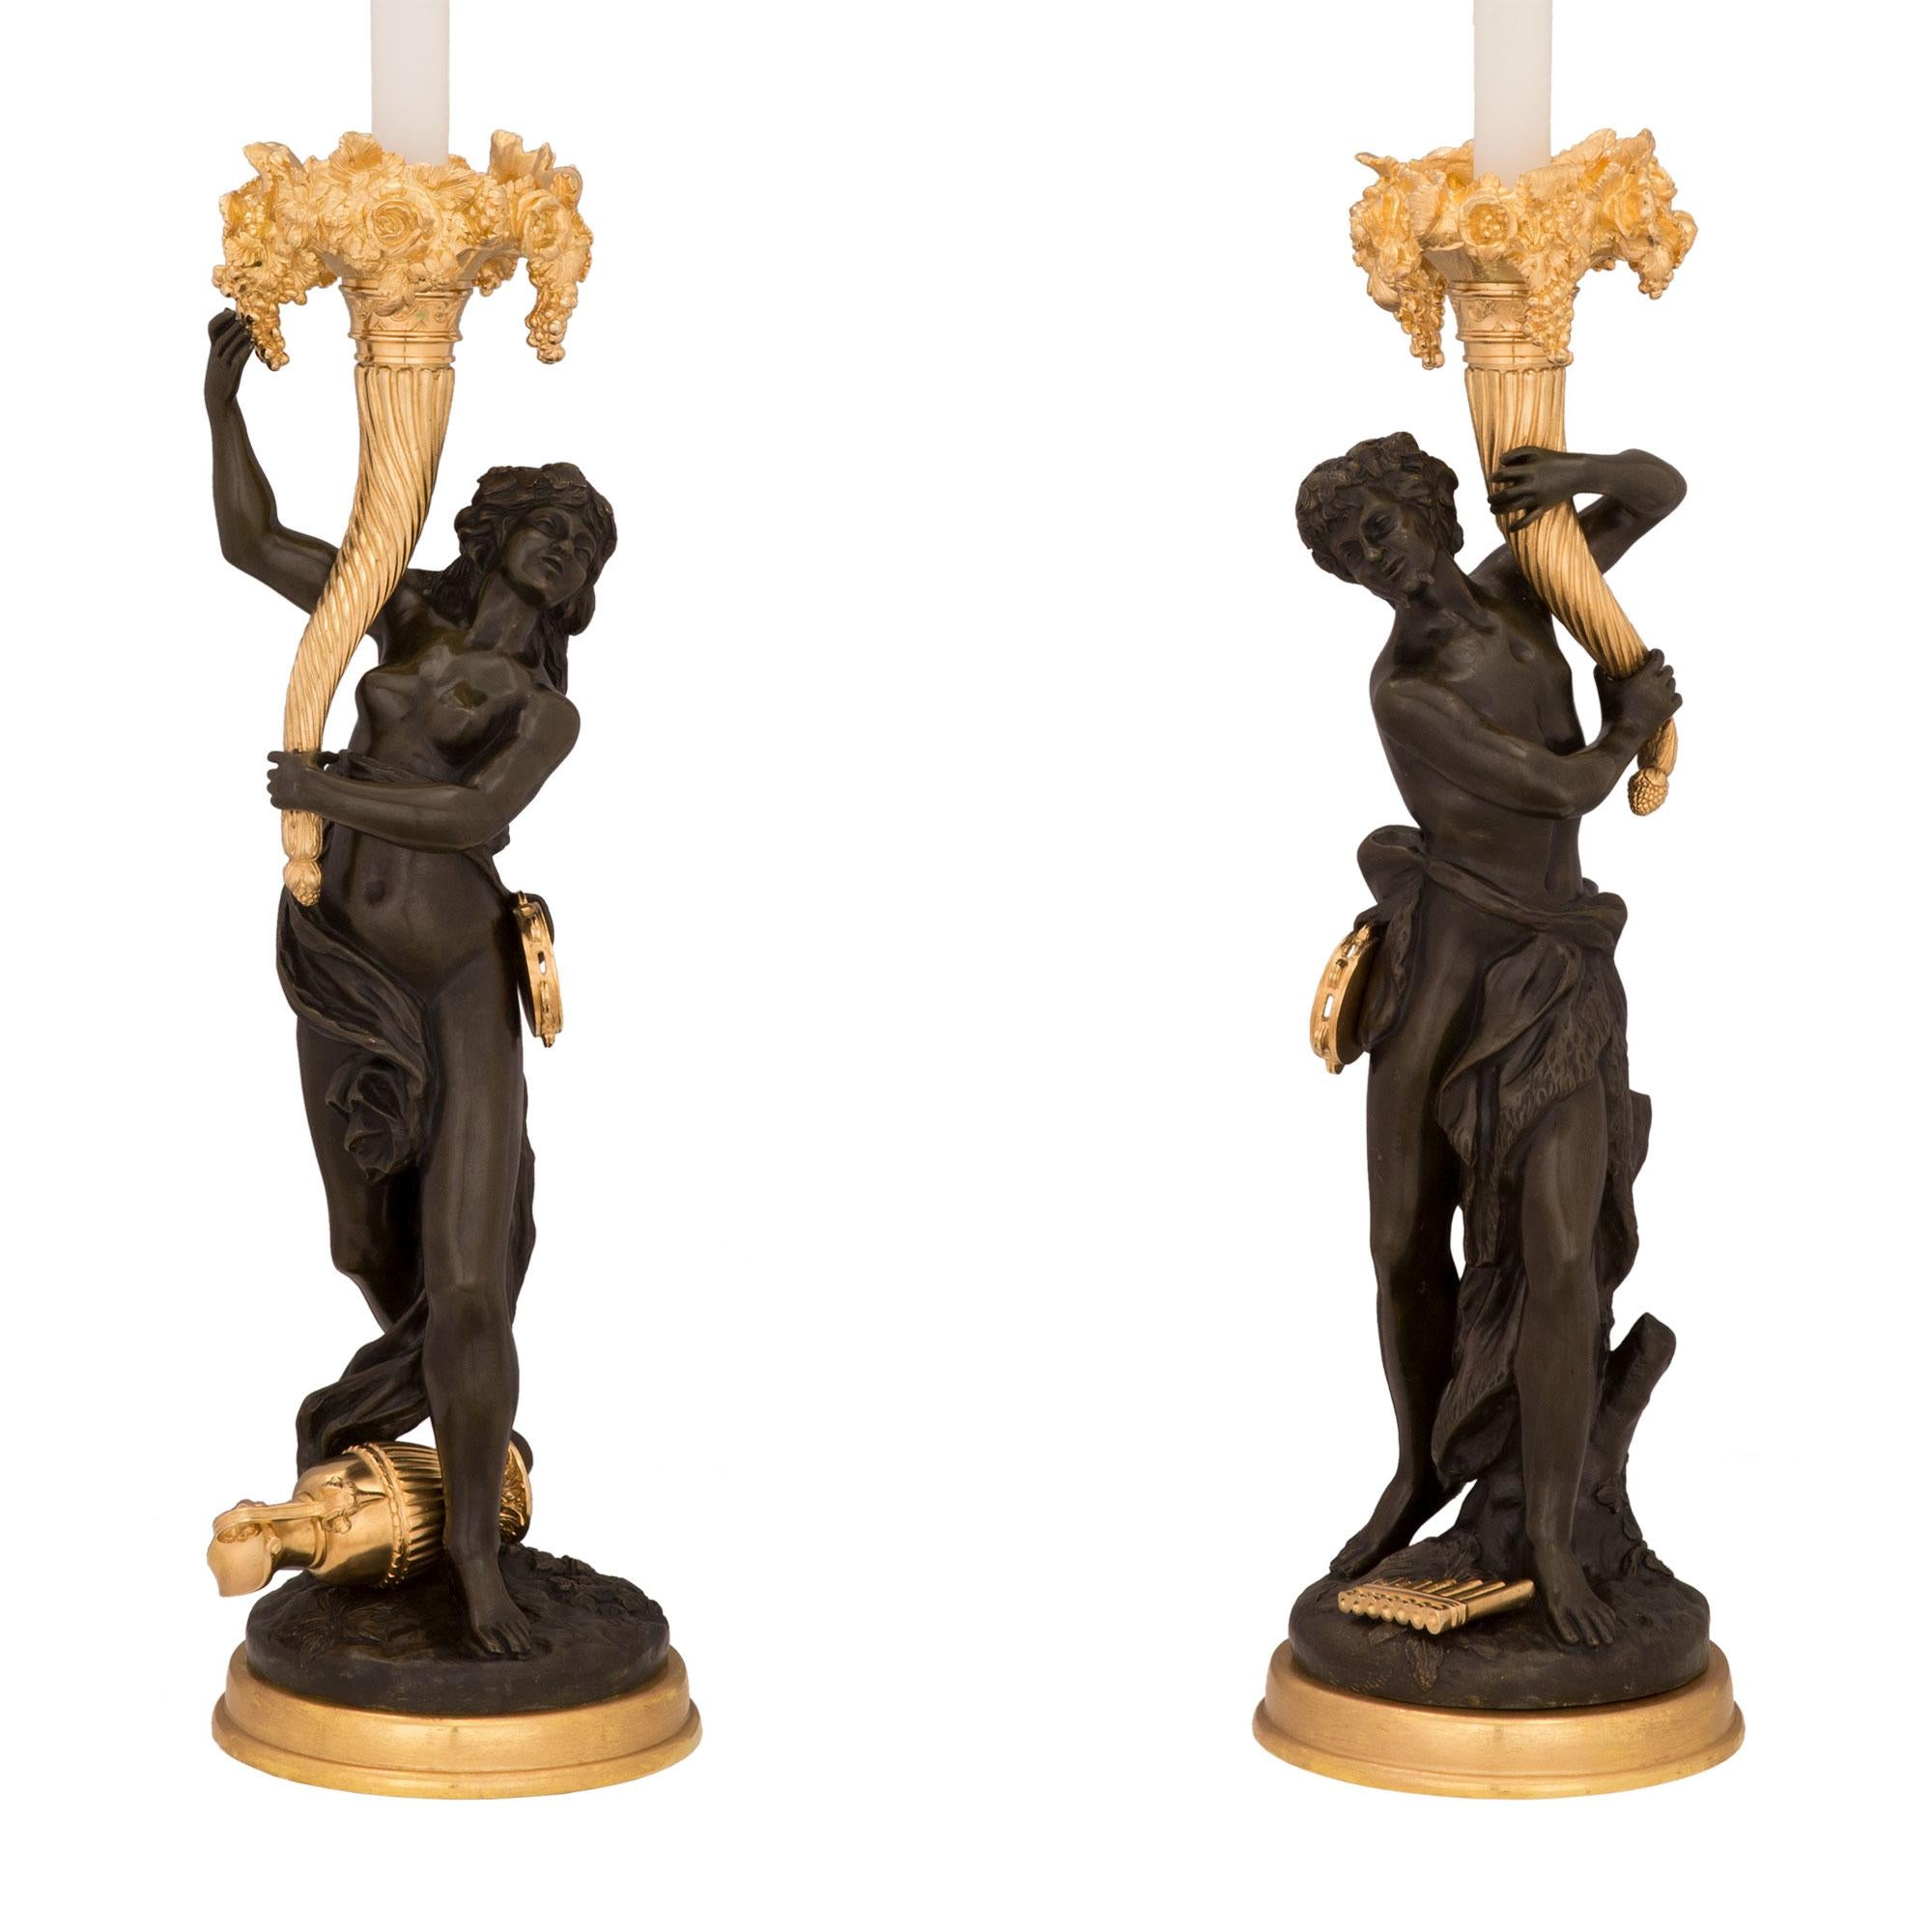 Ein schönes Paar französischer Lampen aus dem 19. Jahrhundert aus Louis XVI. Ormolu und patinierter Bronze, signiert Clodion. Jede Leuchte wird von einem feinen Ormolu-Sockel mit einem wunderschön ausgeführten, geschliffenen Design getragen. Die